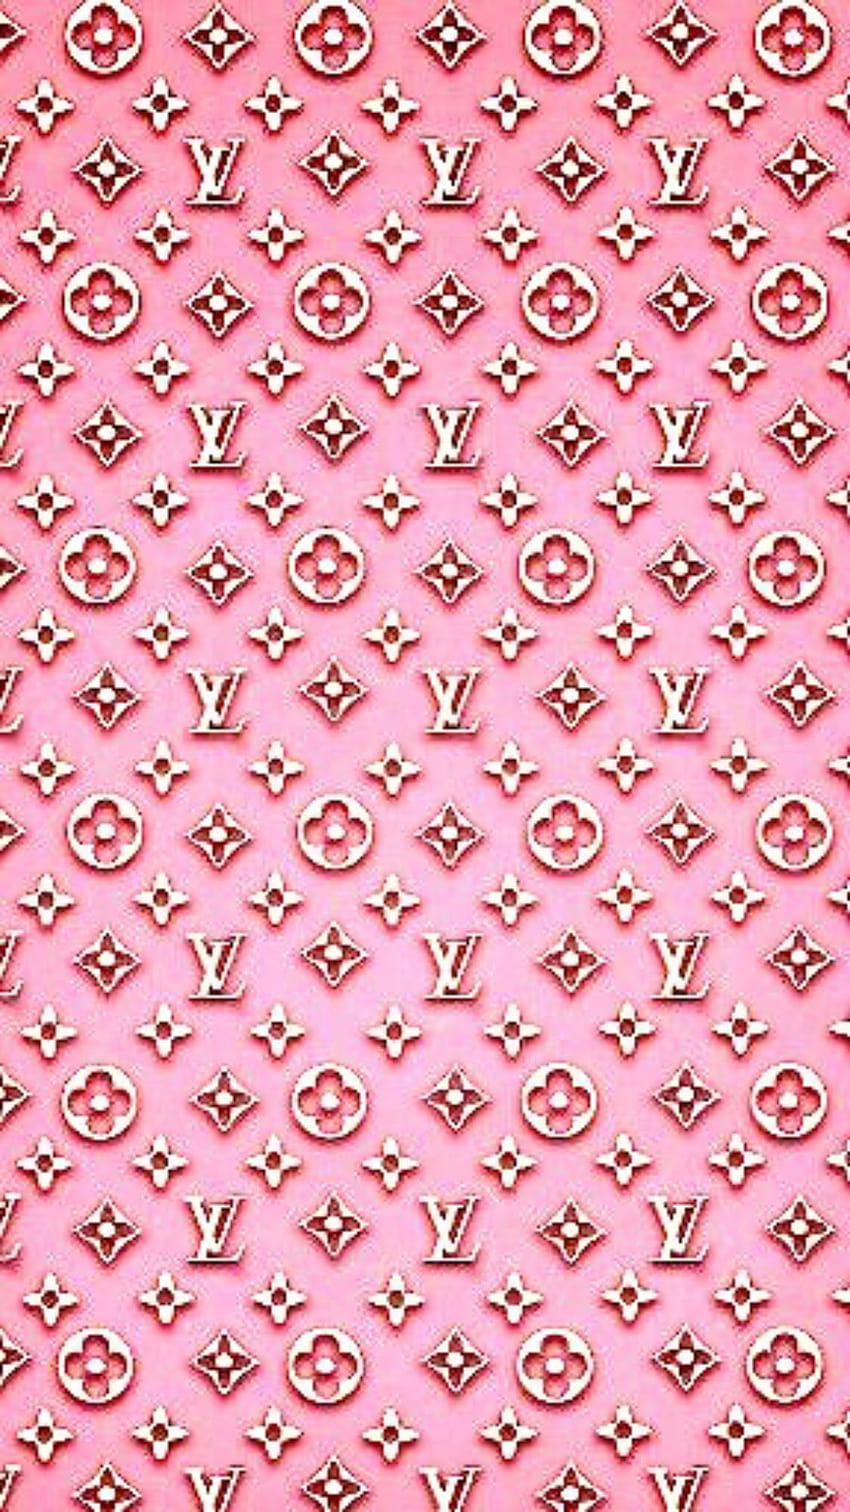 Louis Vuitton Logo Seamless Wallpaper By TeVesMuyNerviosa  Louis vuitton  iphone wallpaper, New wallpaper iphone, Iphone wallpaper glitter